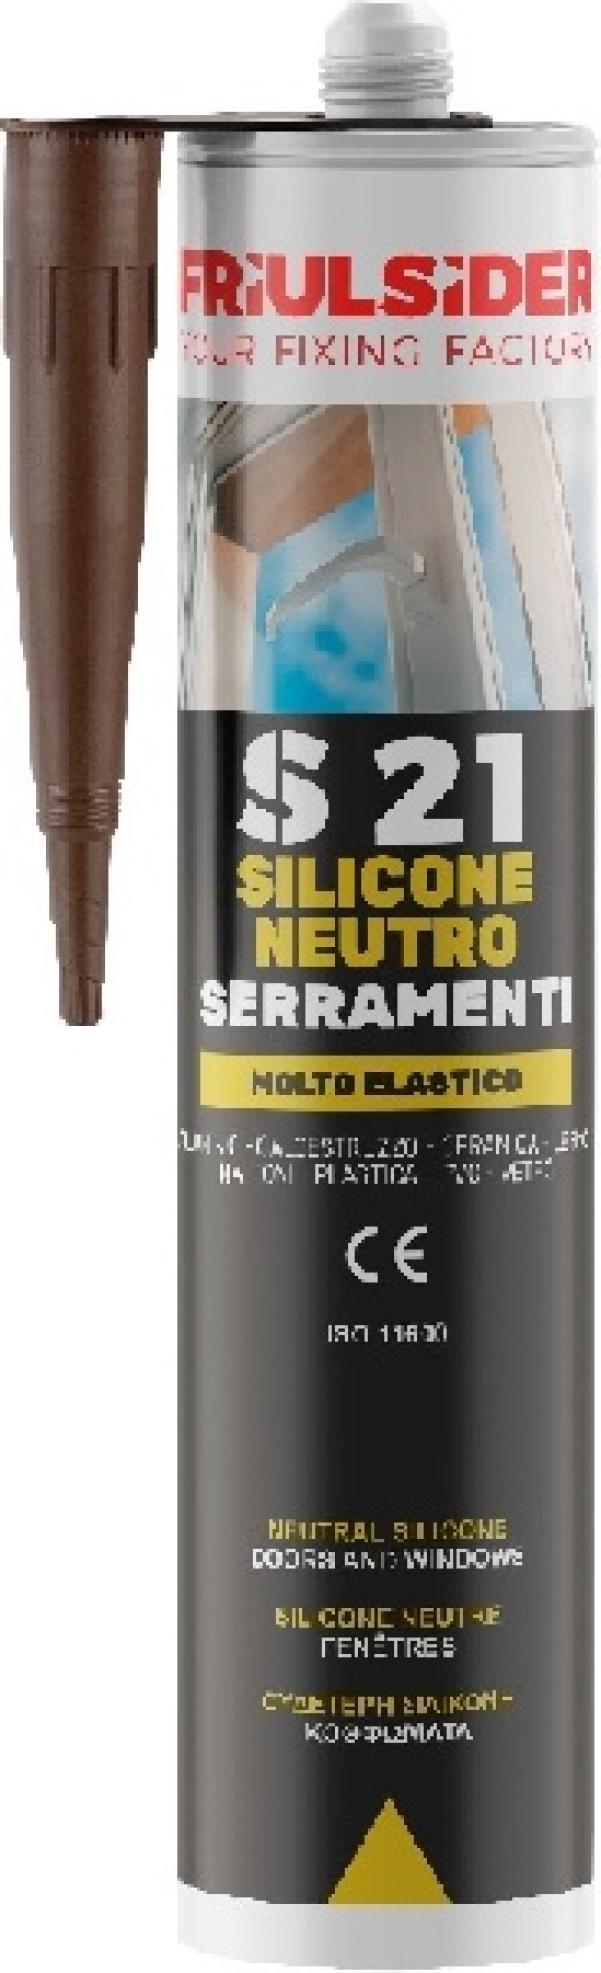 Silicone neutro serramenti marrone ral8014 310 ml Friulsider S2106